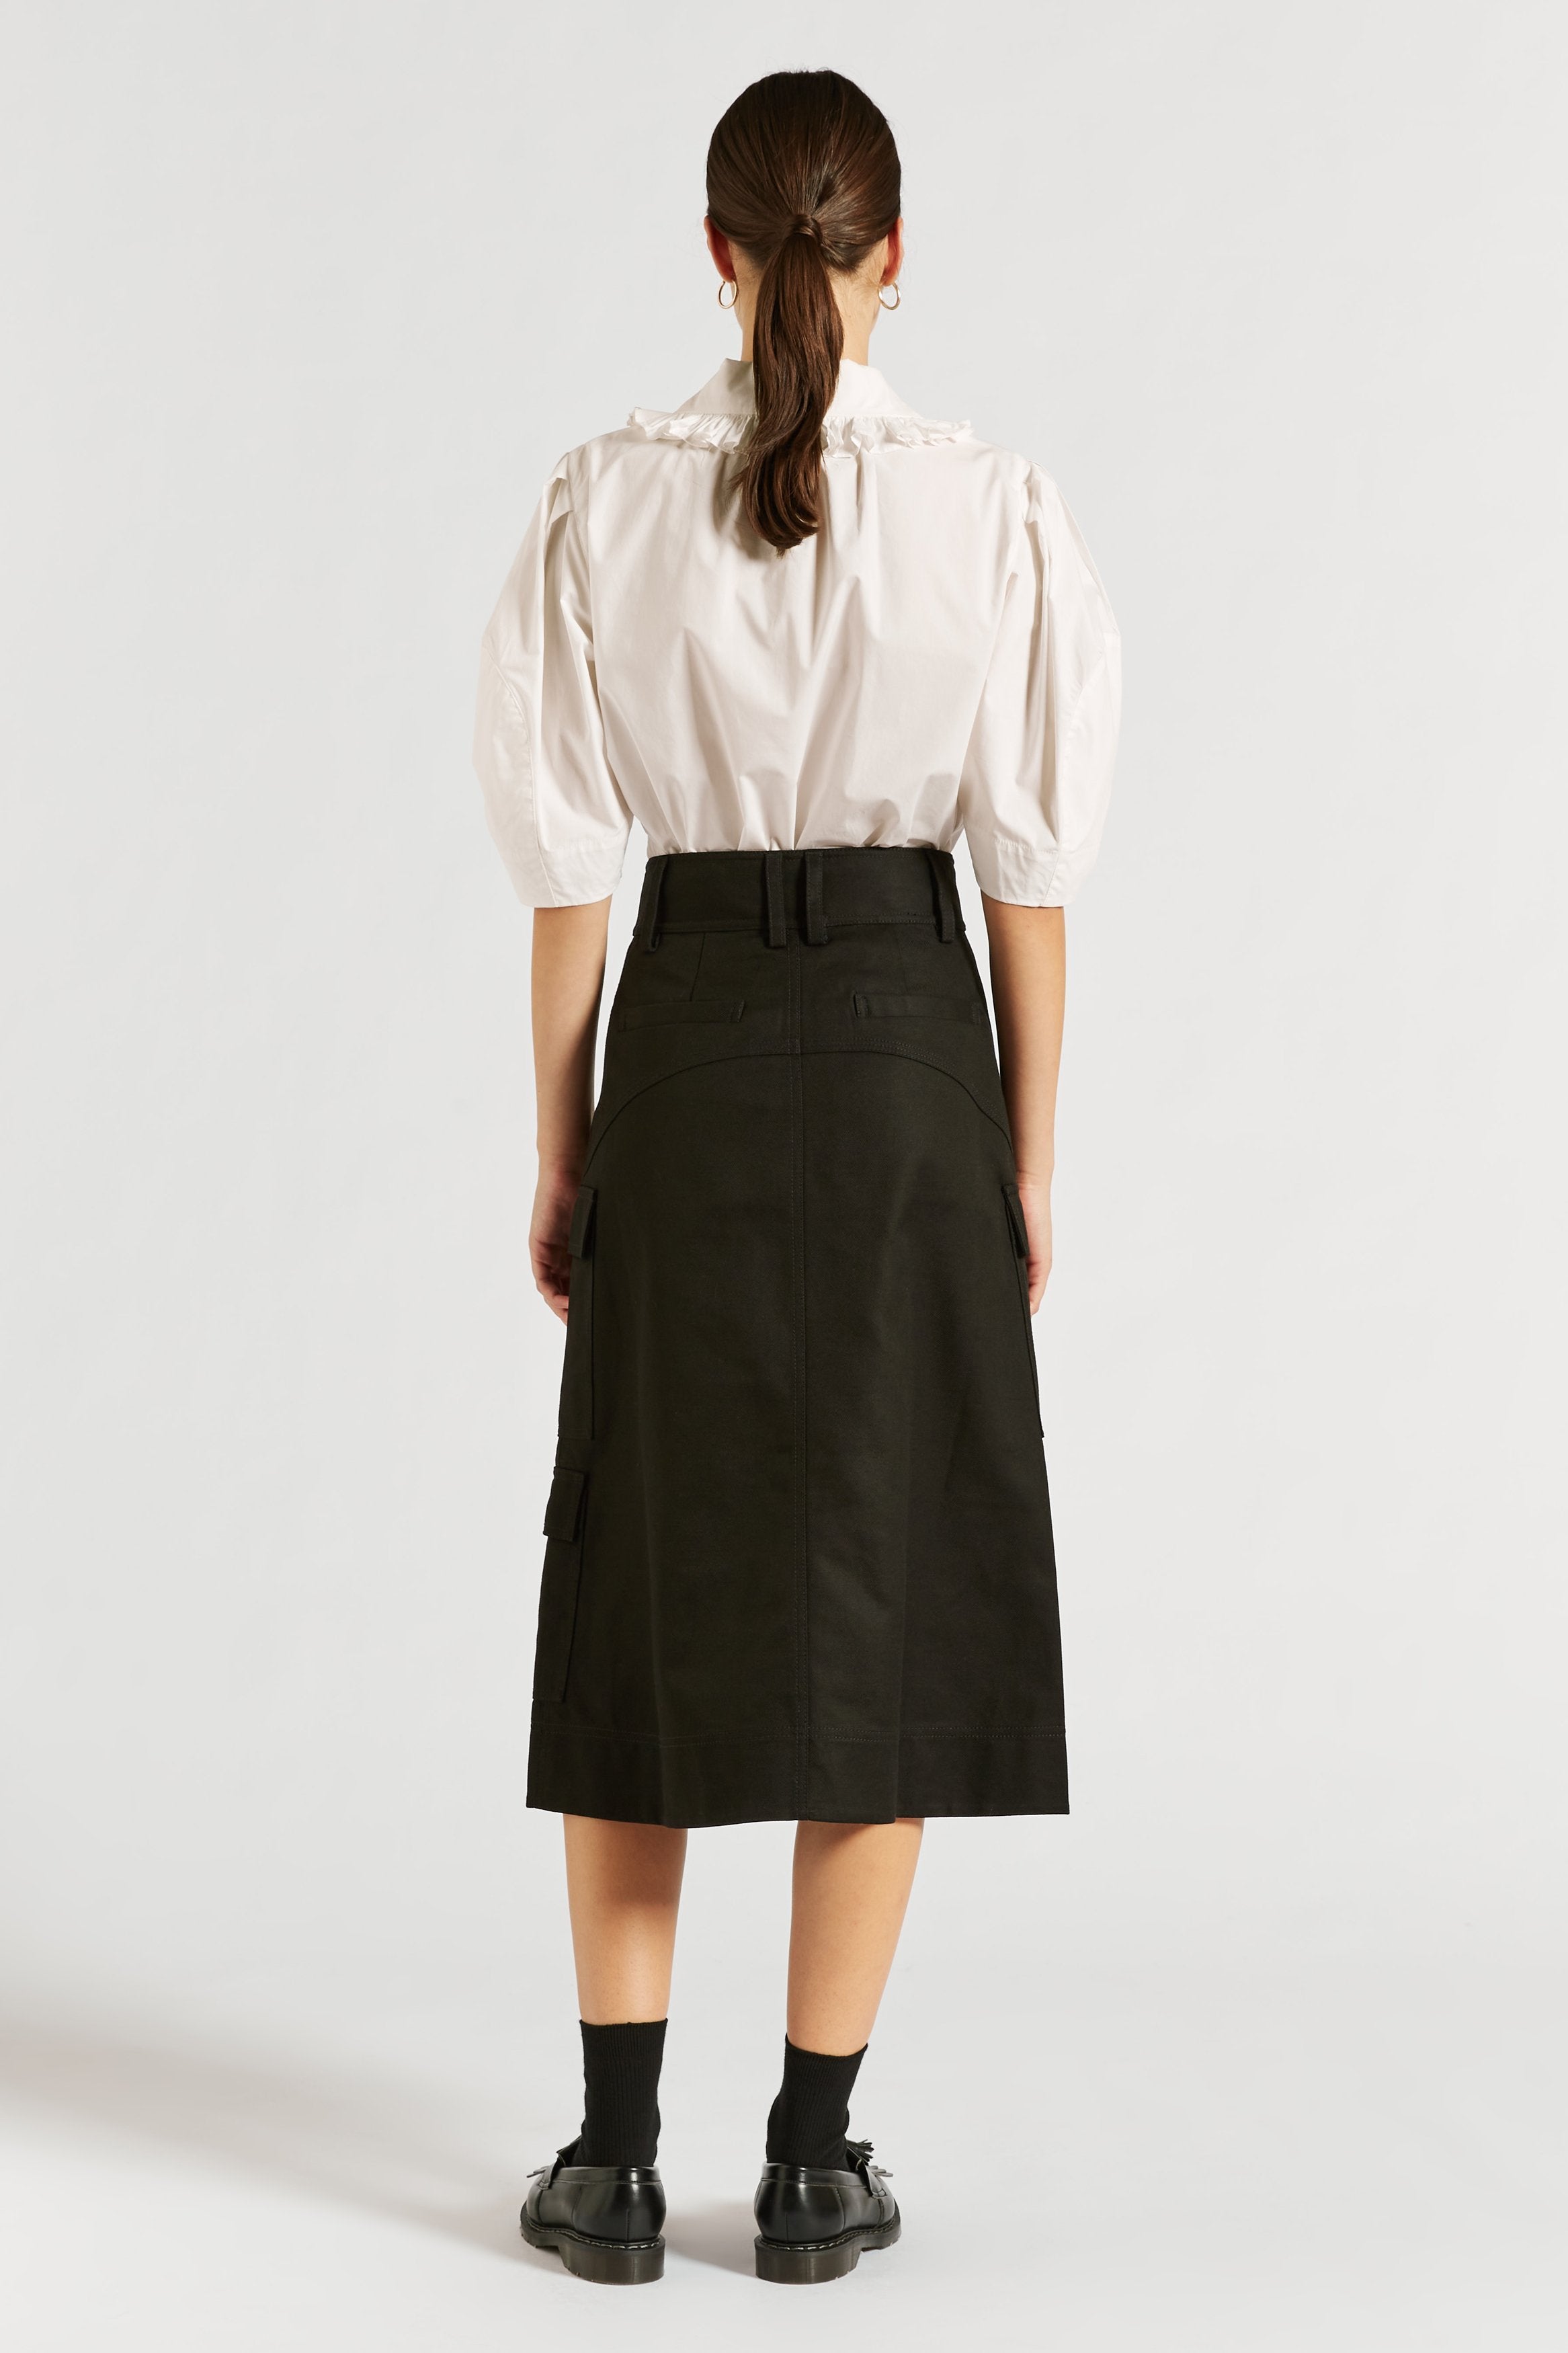 Esther Drill Skirt | Lee Mathews Official Online Store